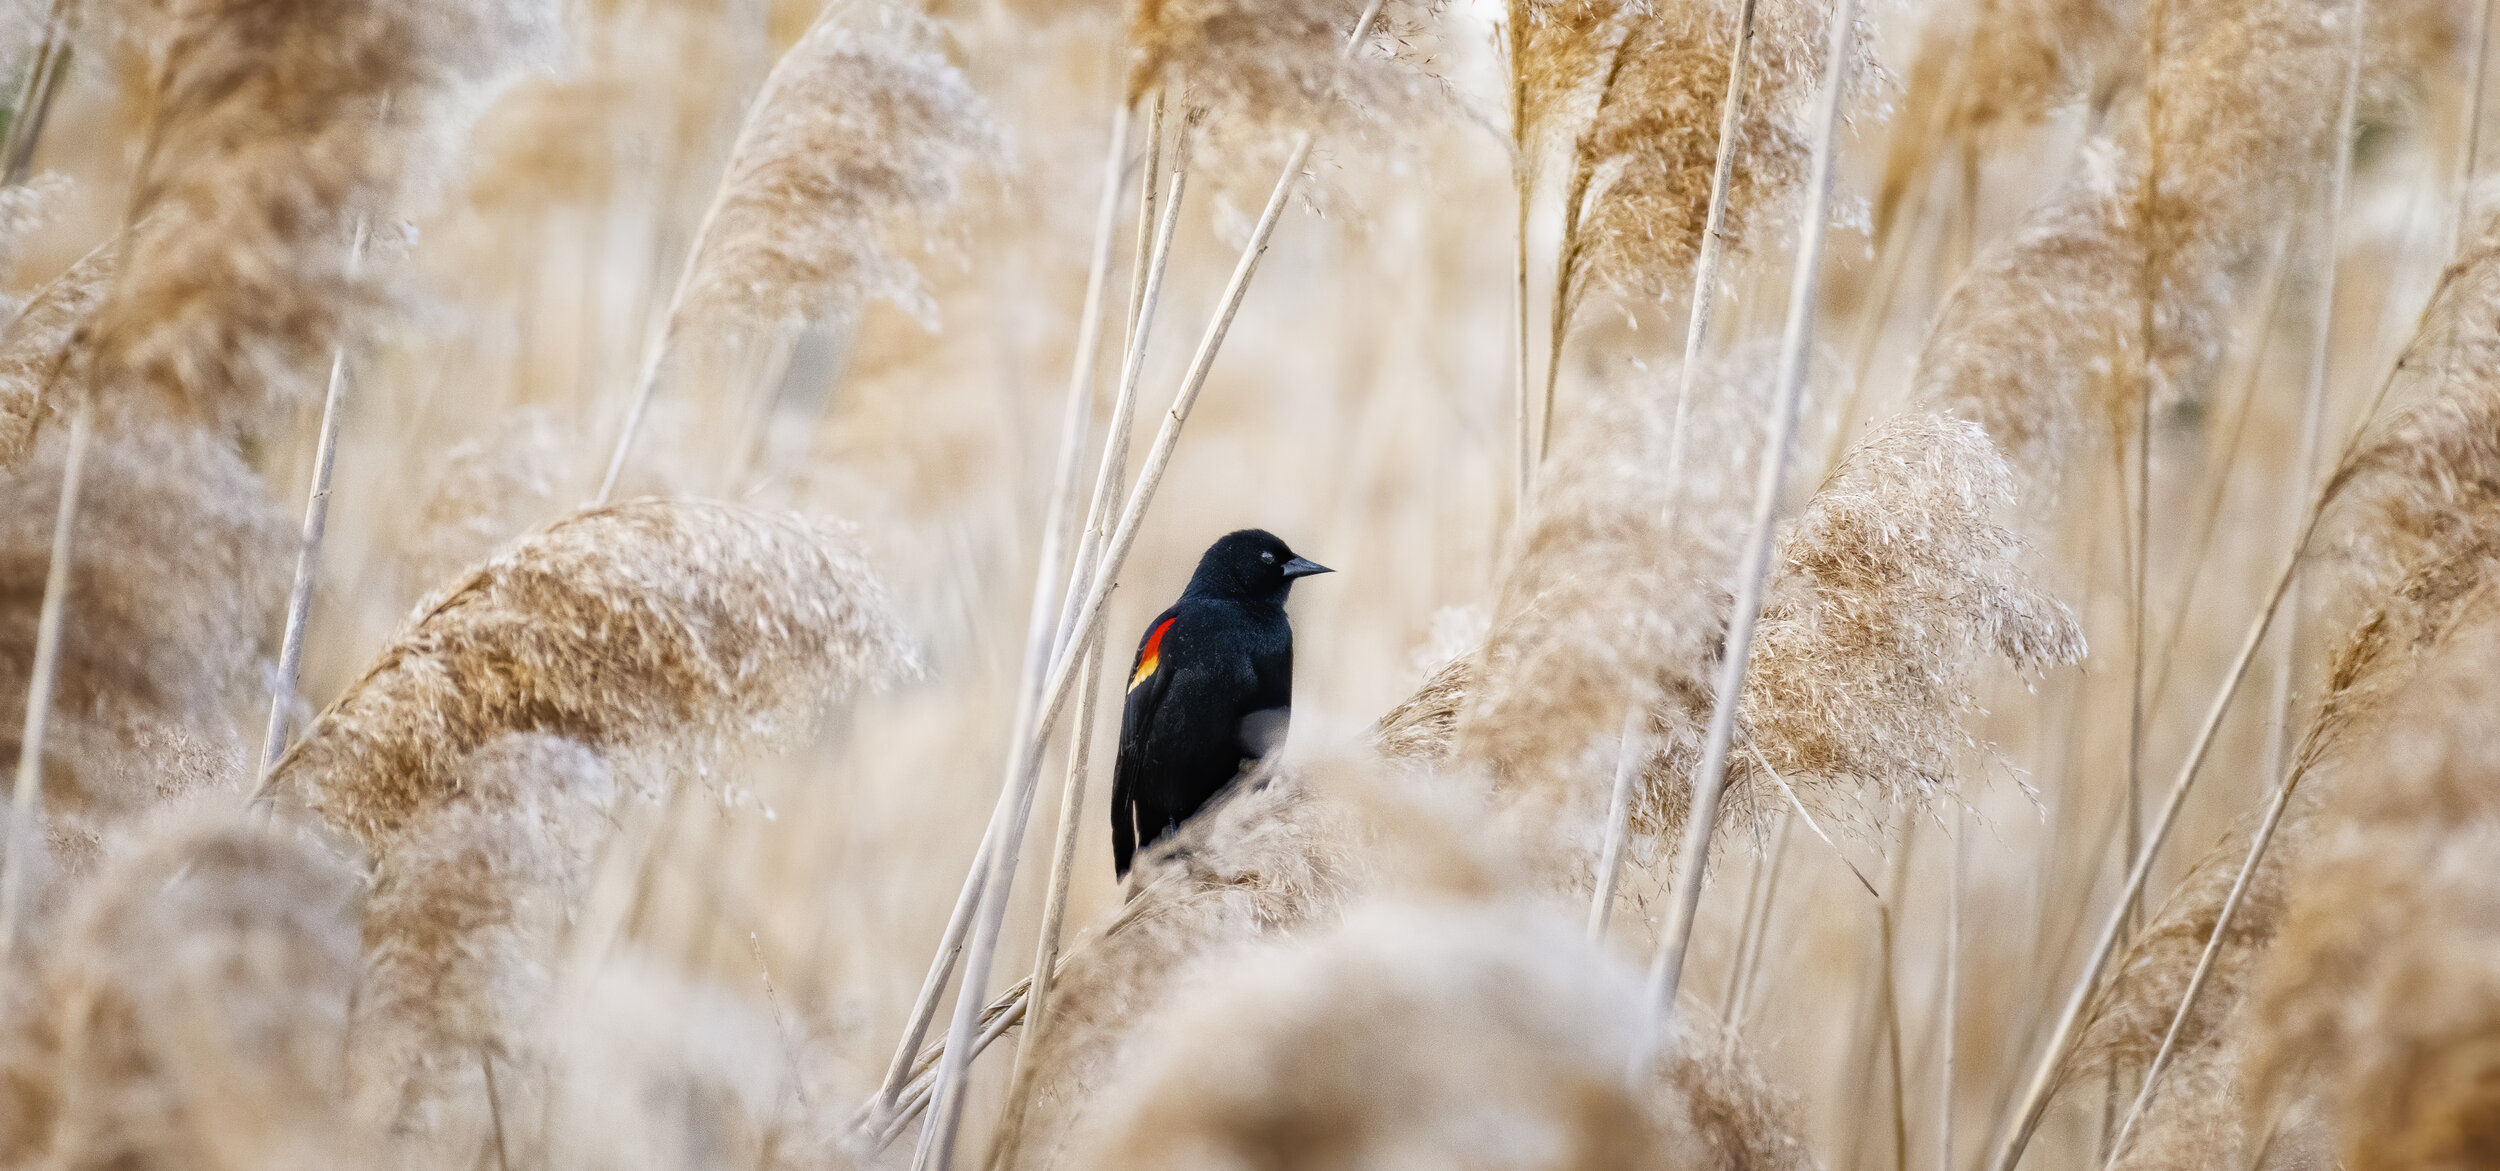 Blackbird I